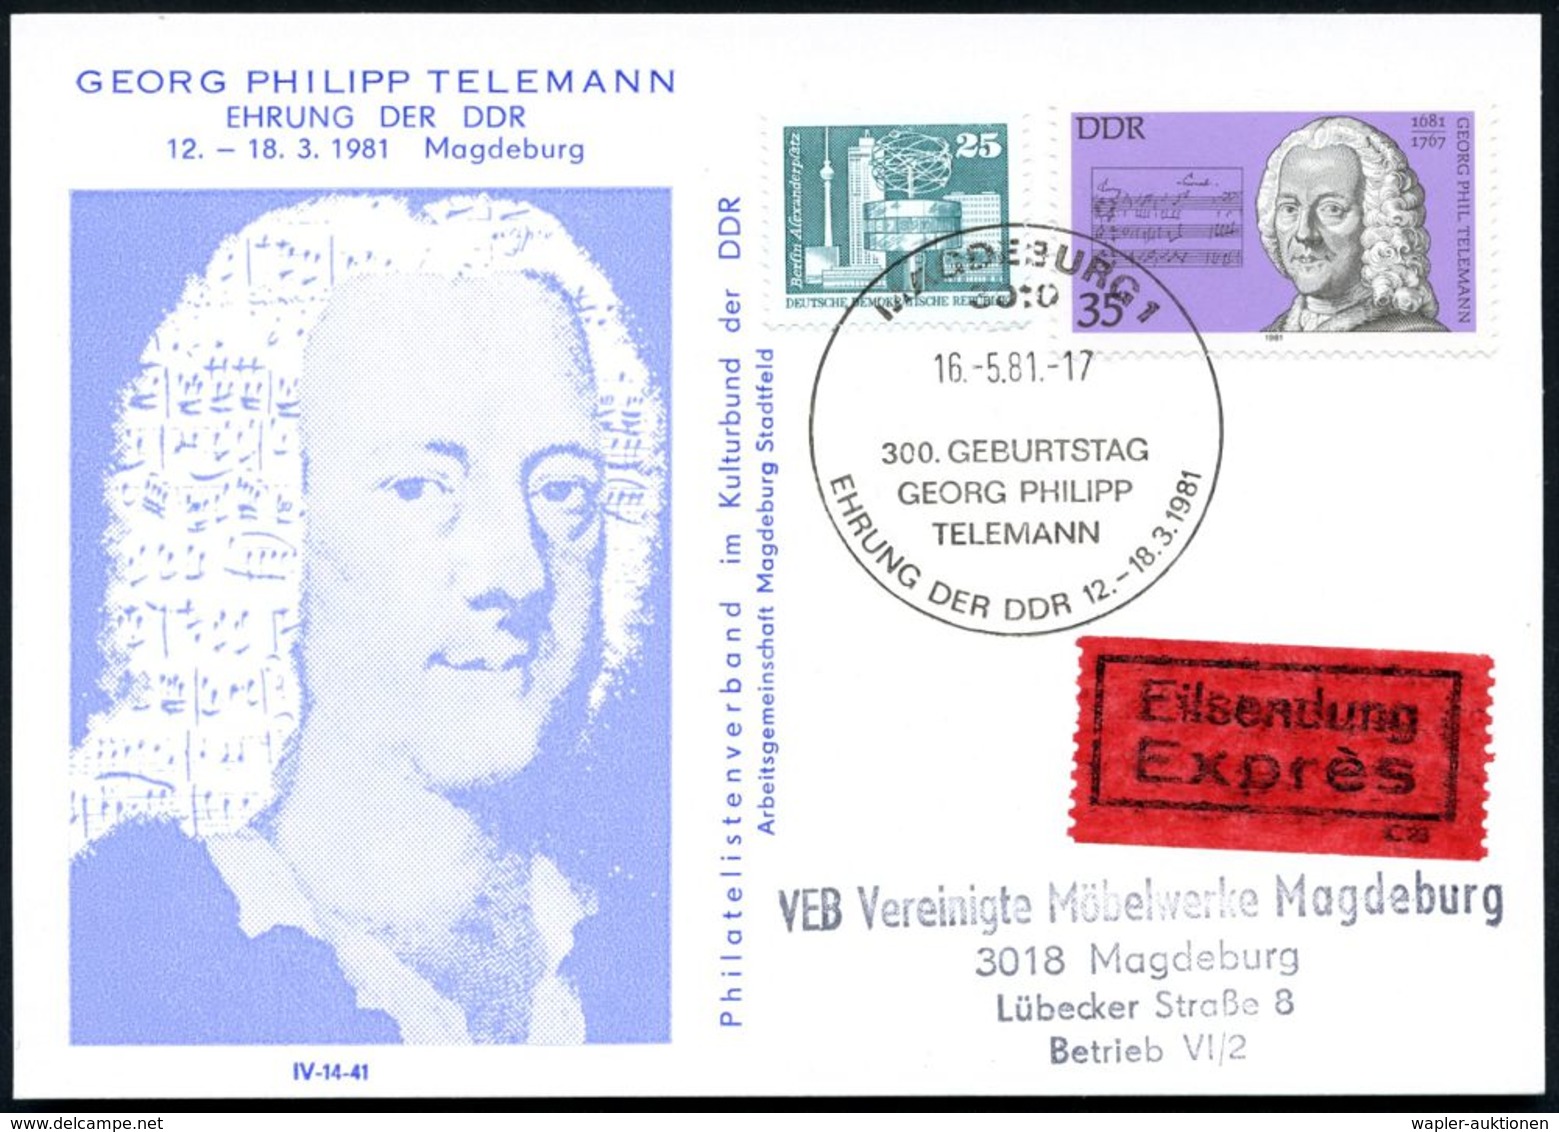 3010 MAGDEBURG1/ 300.GEBURTSTAG/ GEORG PH./ TELEMANN 1981 (21.5.) SSt Auf 35 Pf. G. Ph. Telemann = Zeitgenosse Händels U - Musica